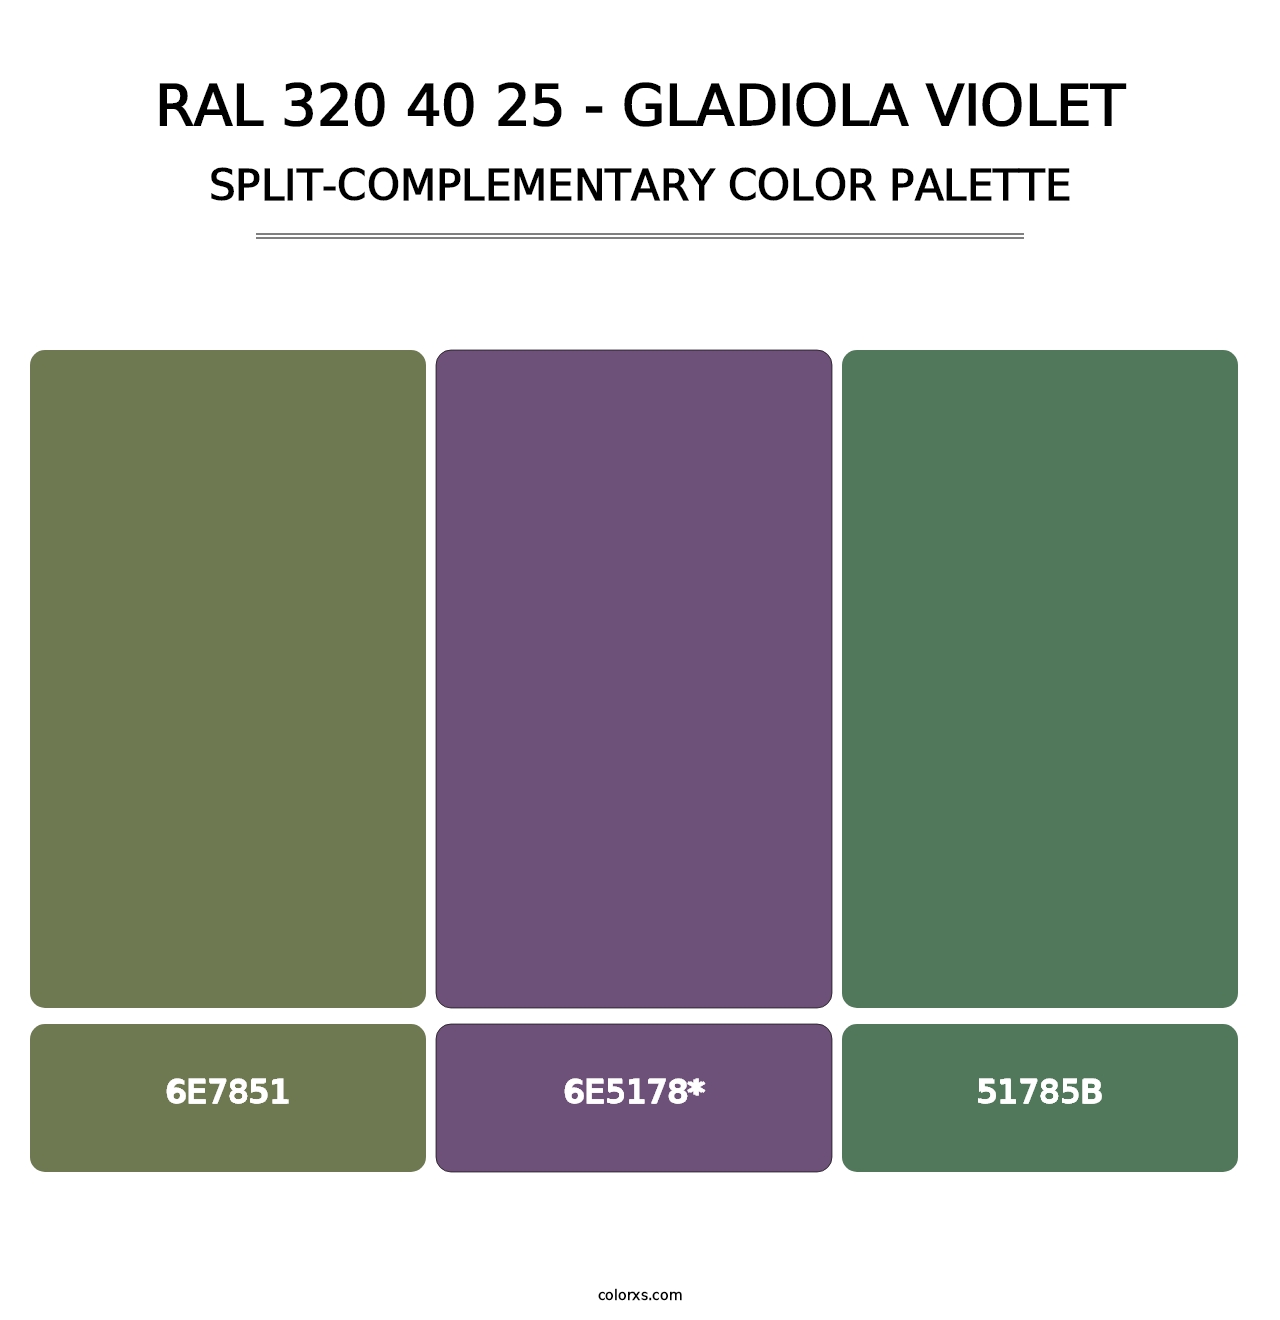 RAL 320 40 25 - Gladiola Violet - Split-Complementary Color Palette